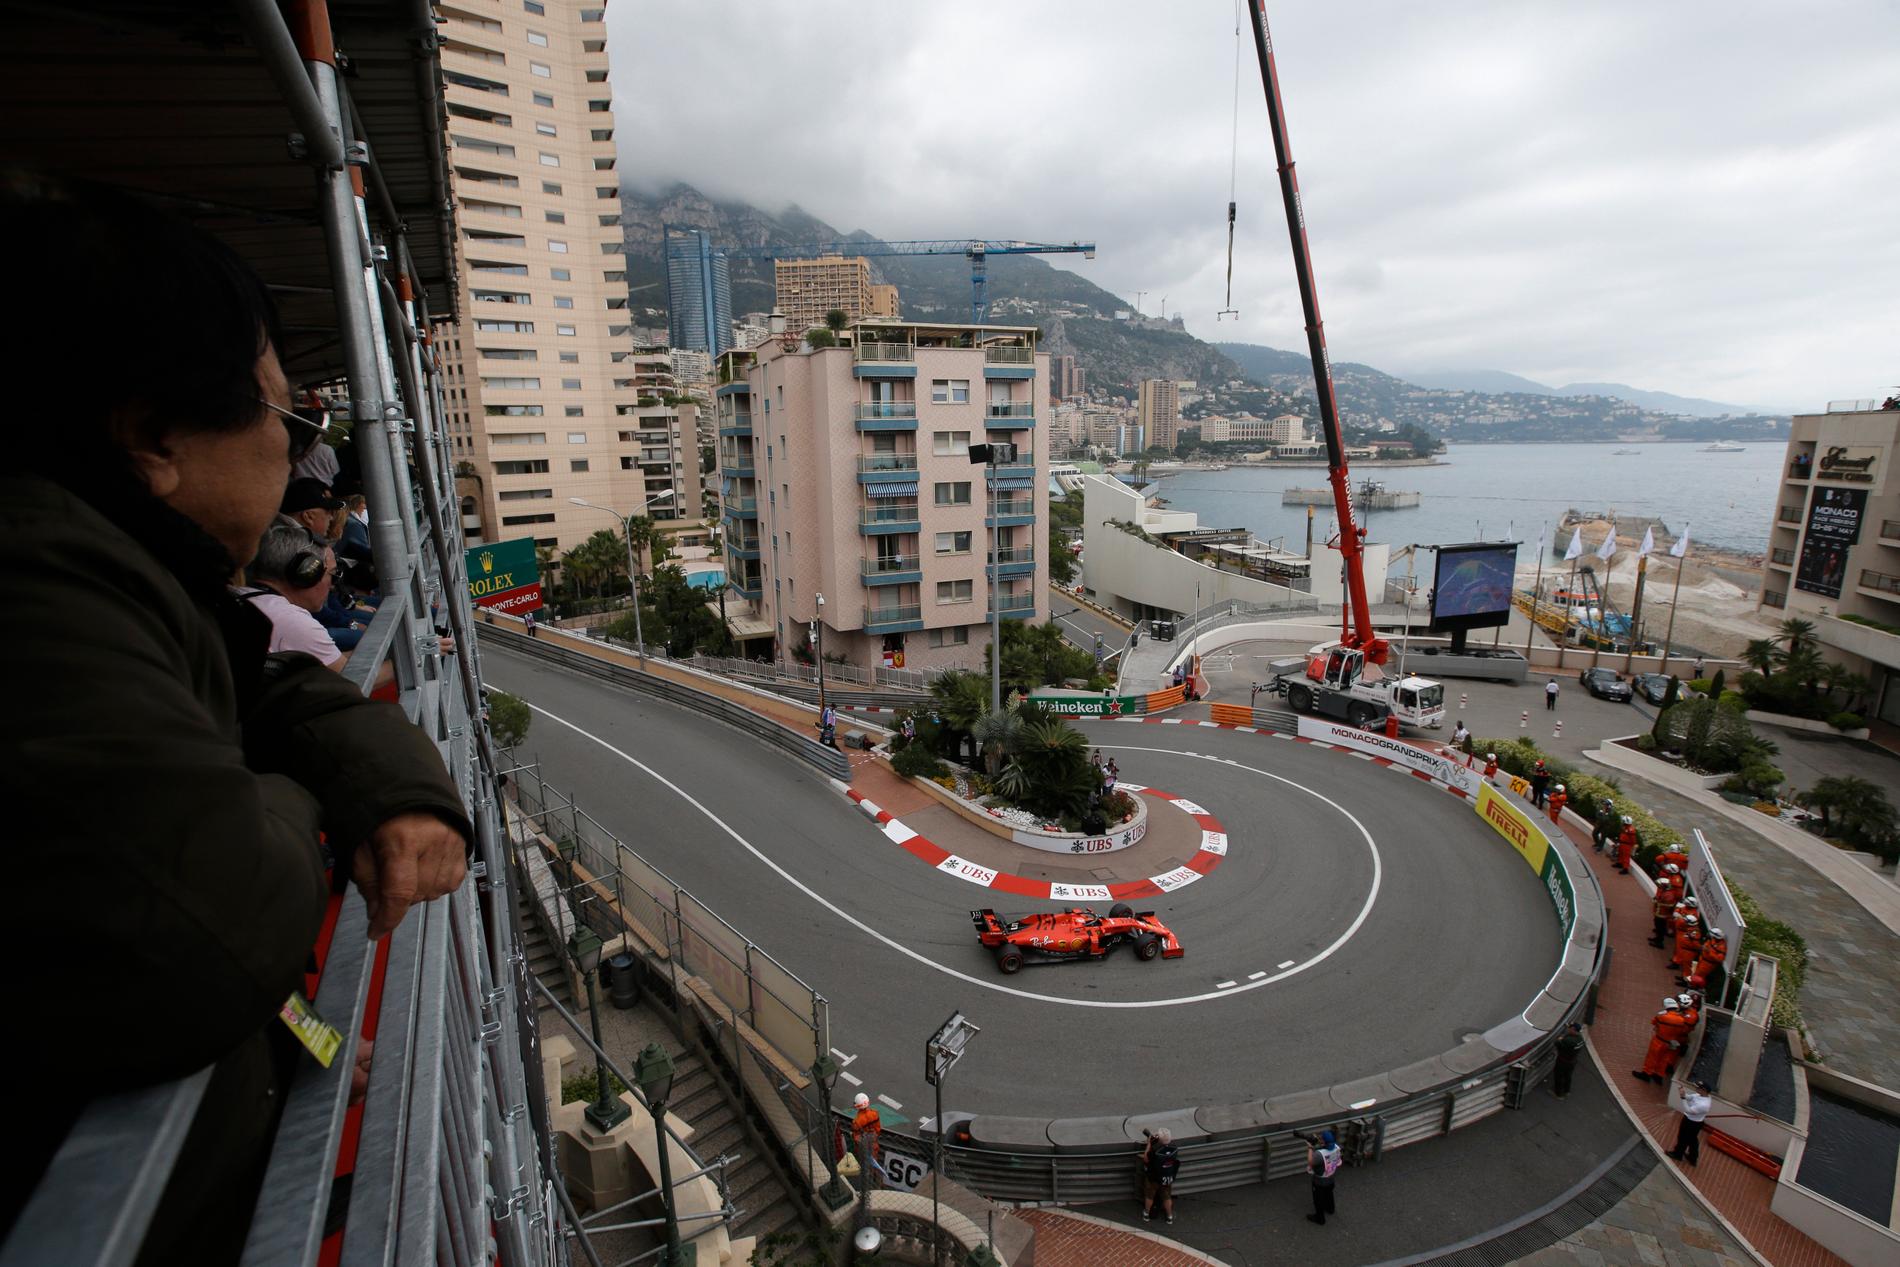 Klassikerloppet Monaco GP körs i helgen. 